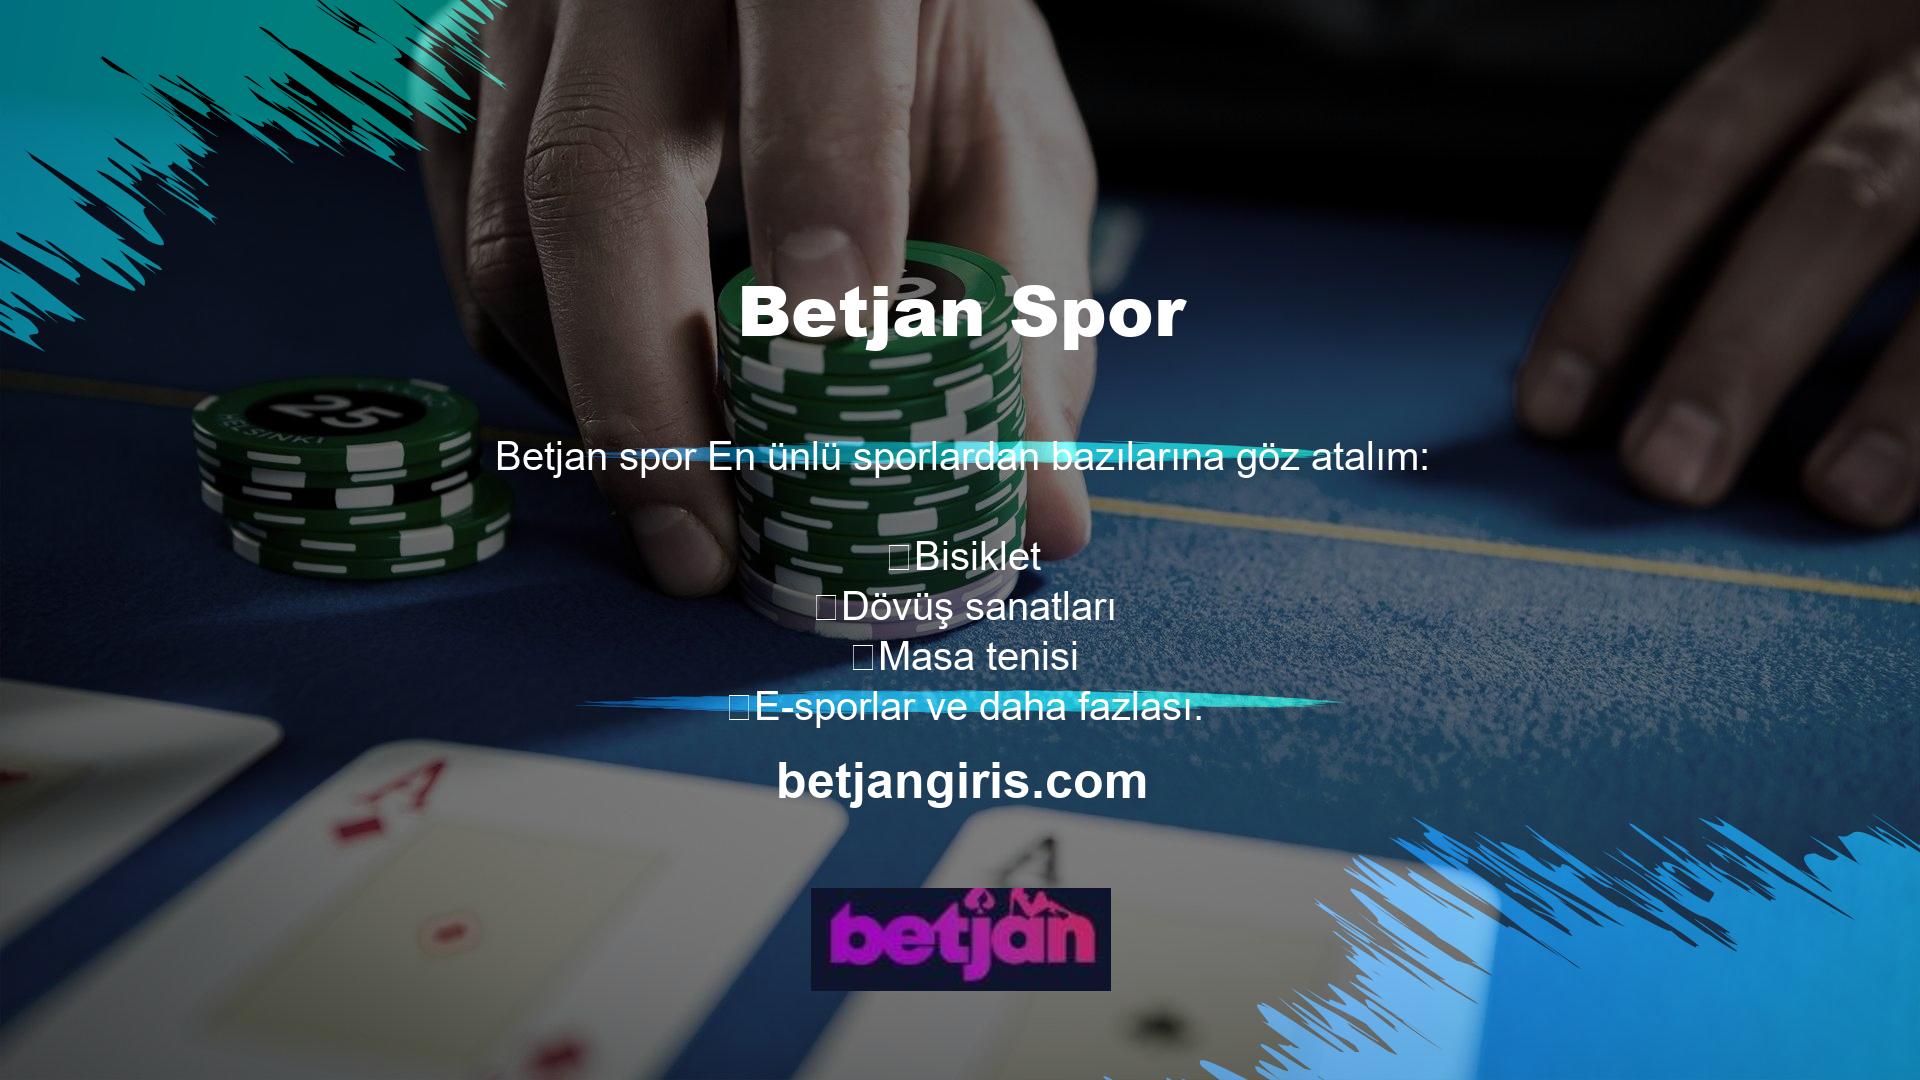 Betjan en eğlenceli casino oyunlarını ve canlı bahis fırsatlarını sizlerle buluşturuyor ve mobil giriş adresini güncelledi